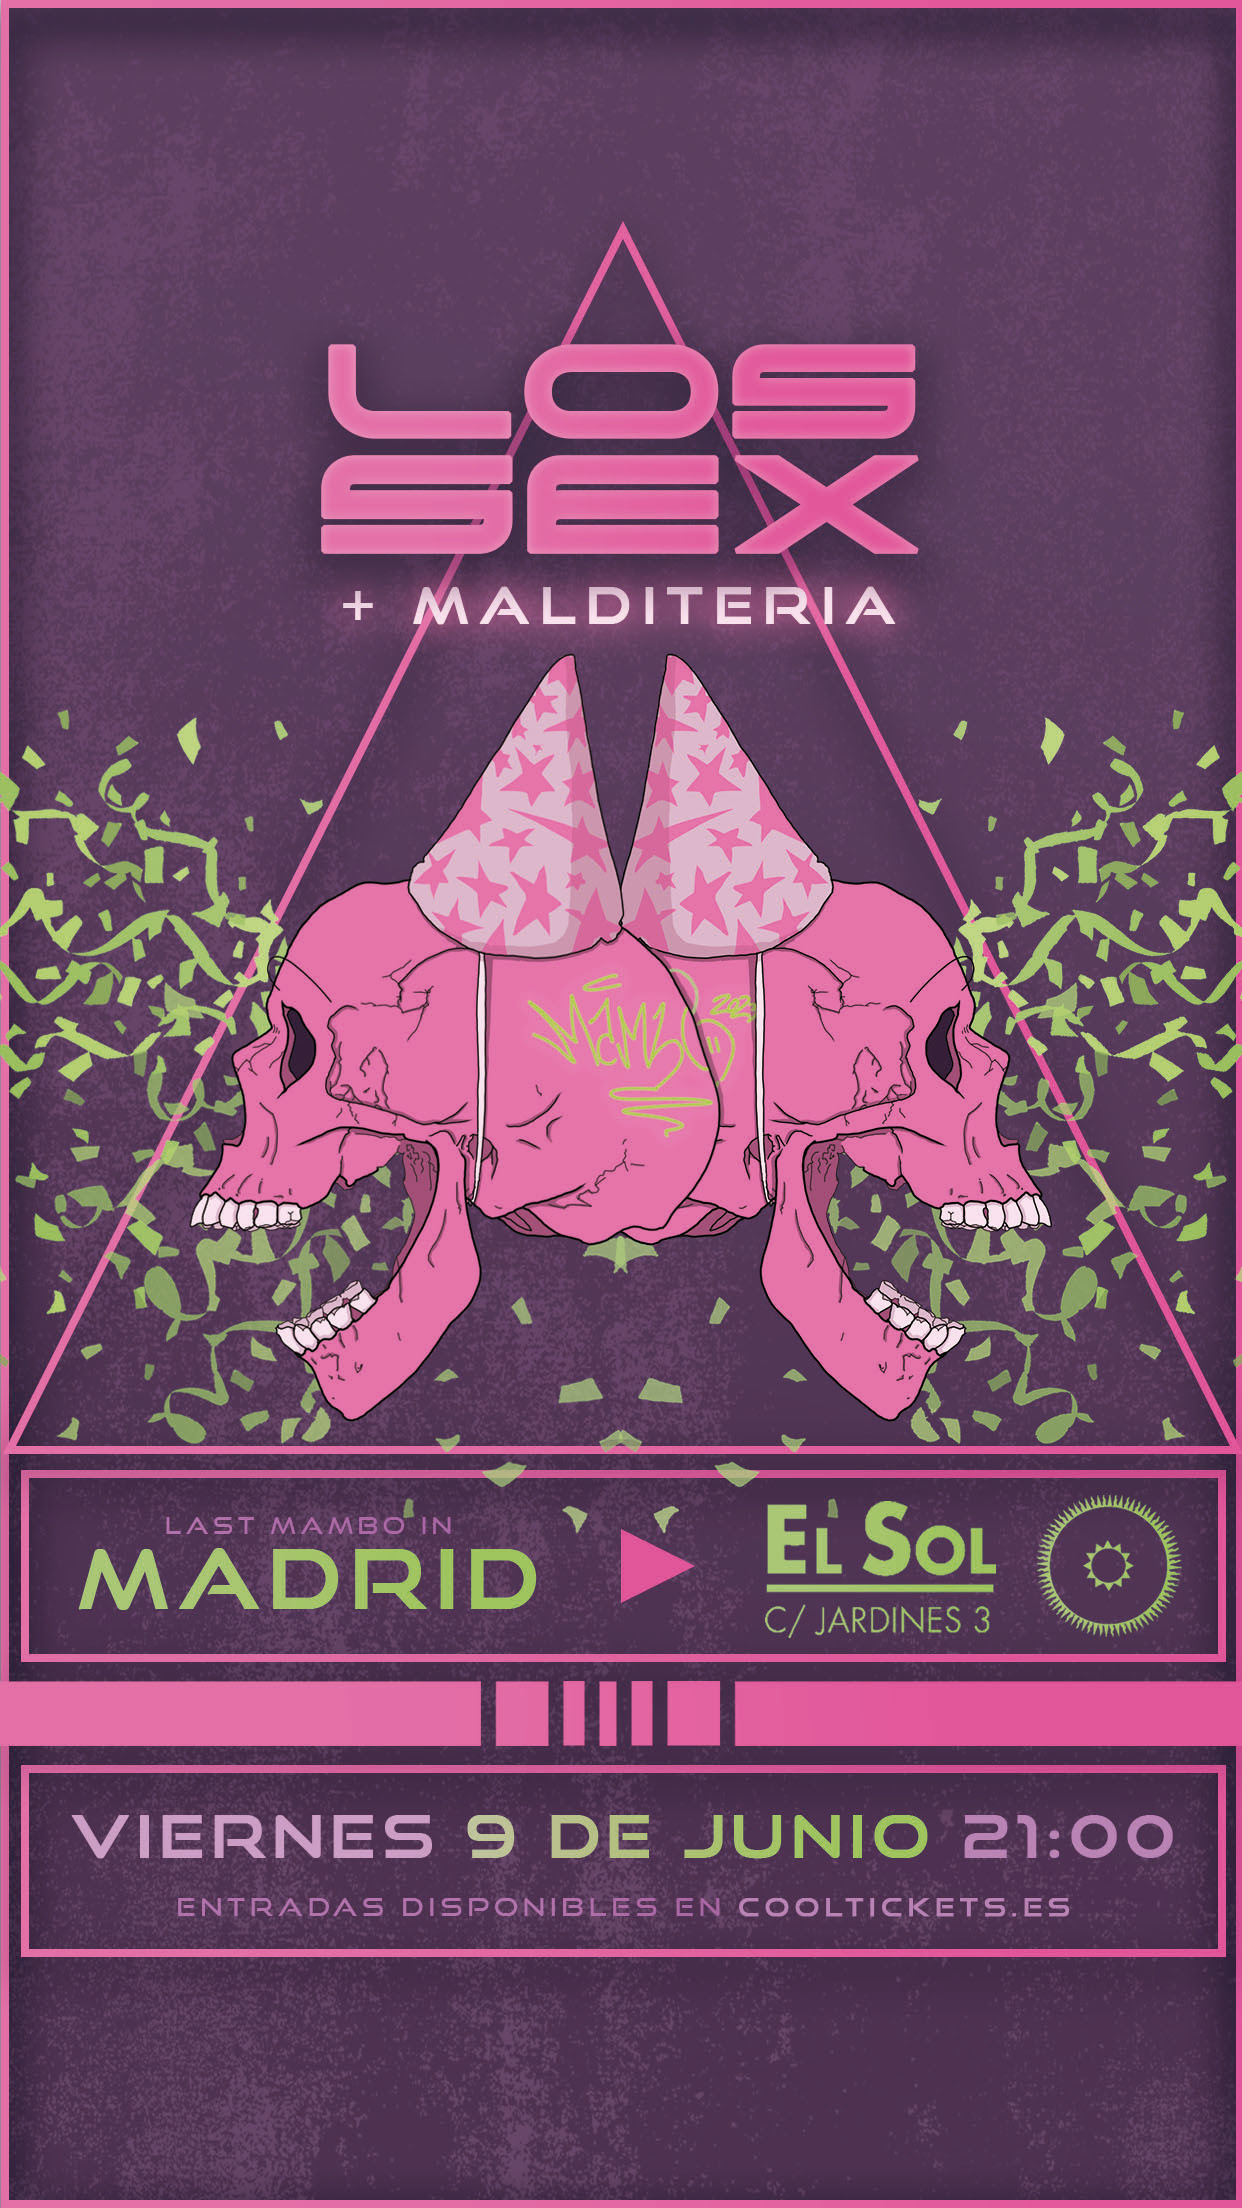 Final de gira de LOS SEX en Madrid el día 9 de junio